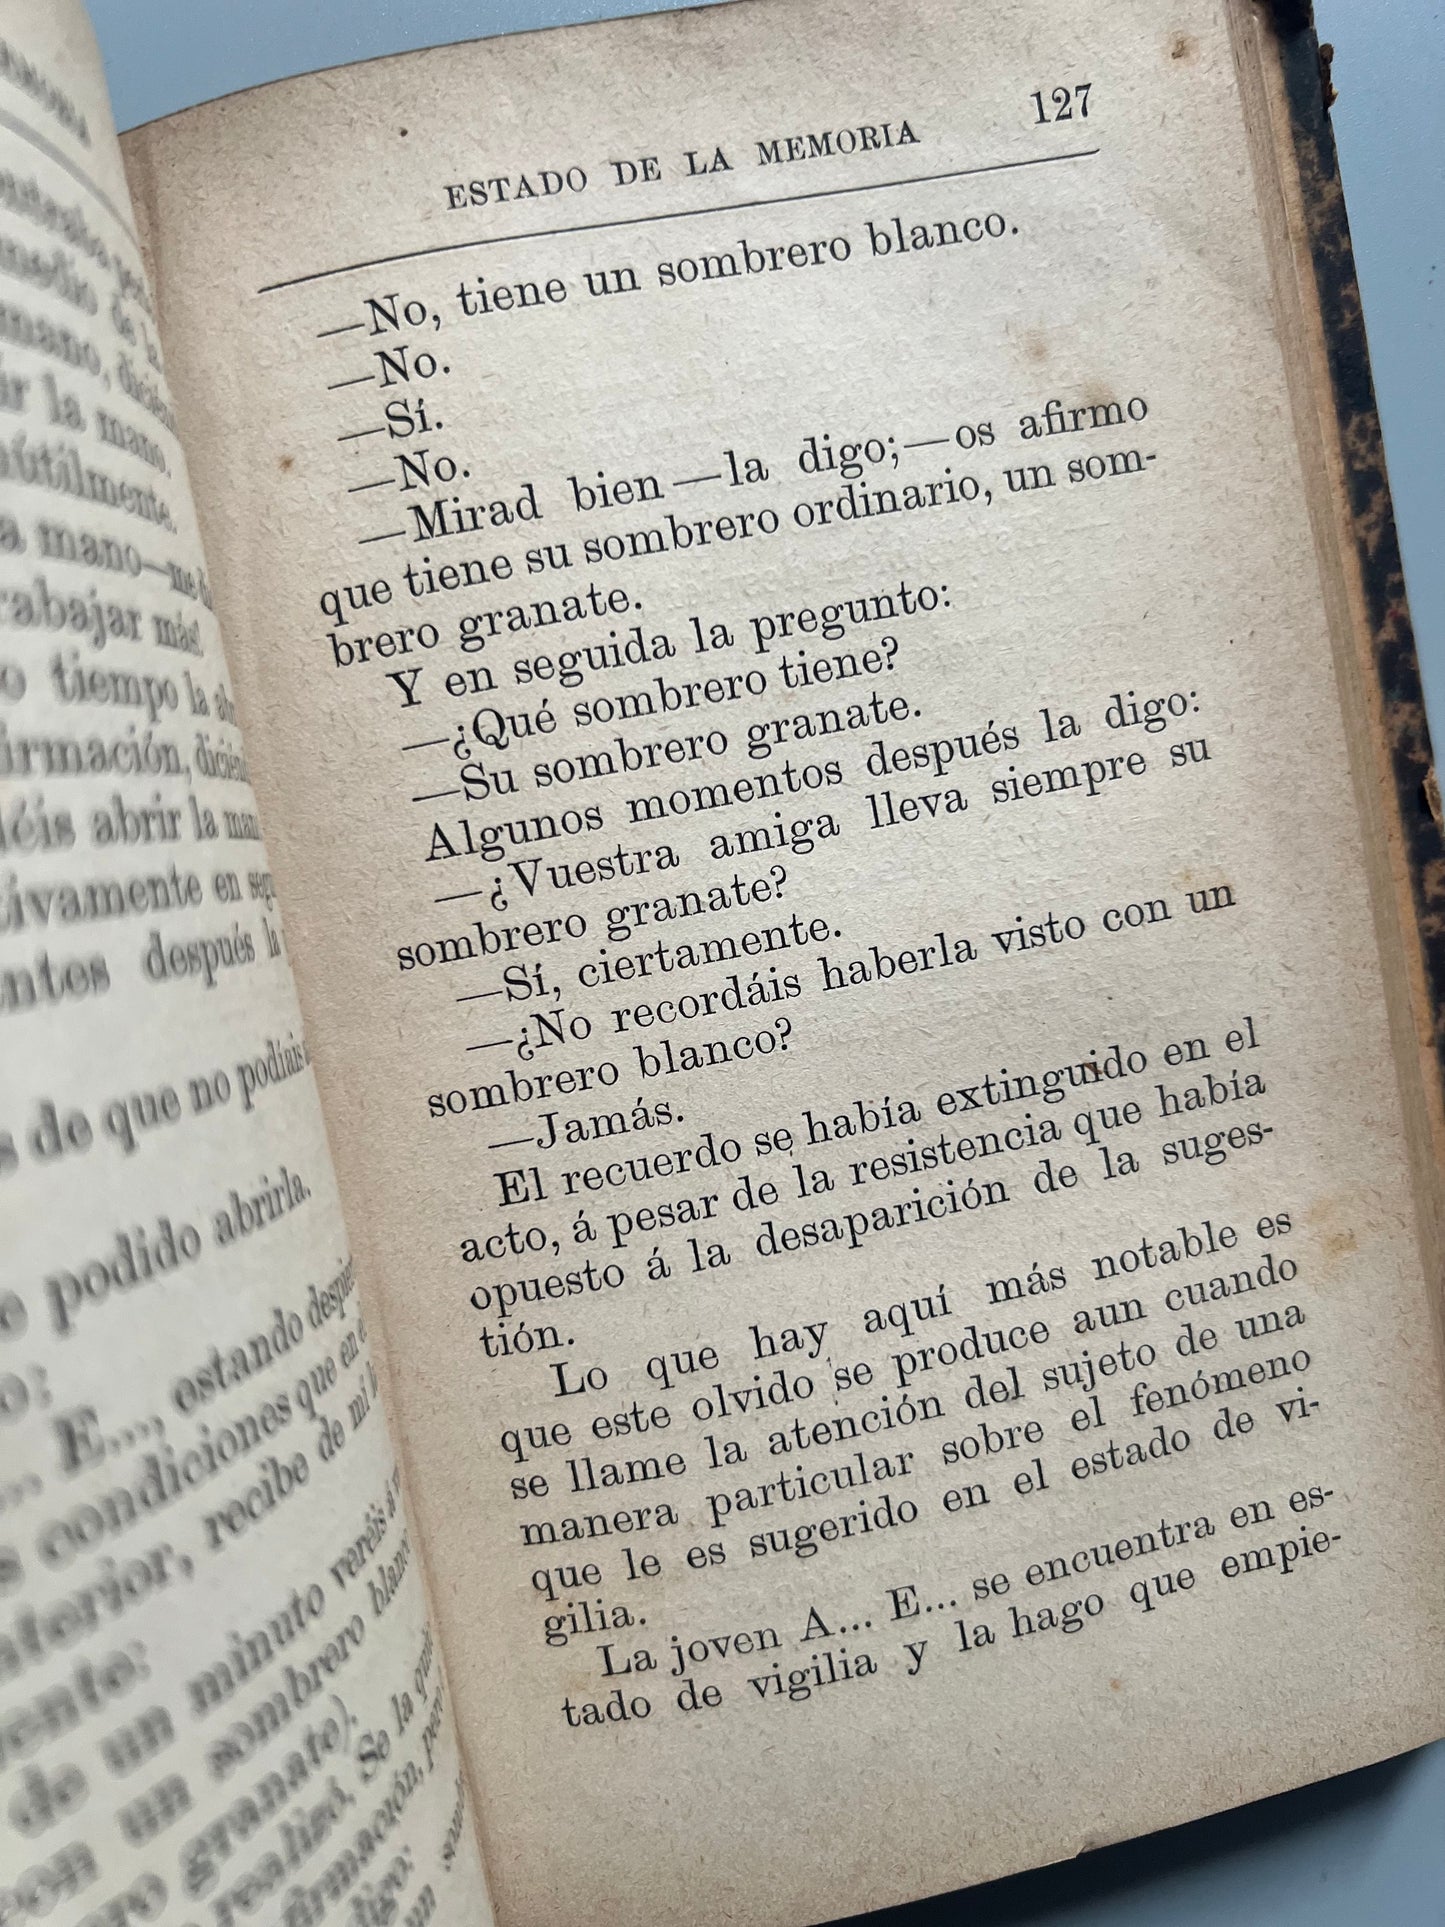 El sonambulismo provocado, H. Beaunis - Librería editorial de D. Carlos Bailly-Bailliere, 1887